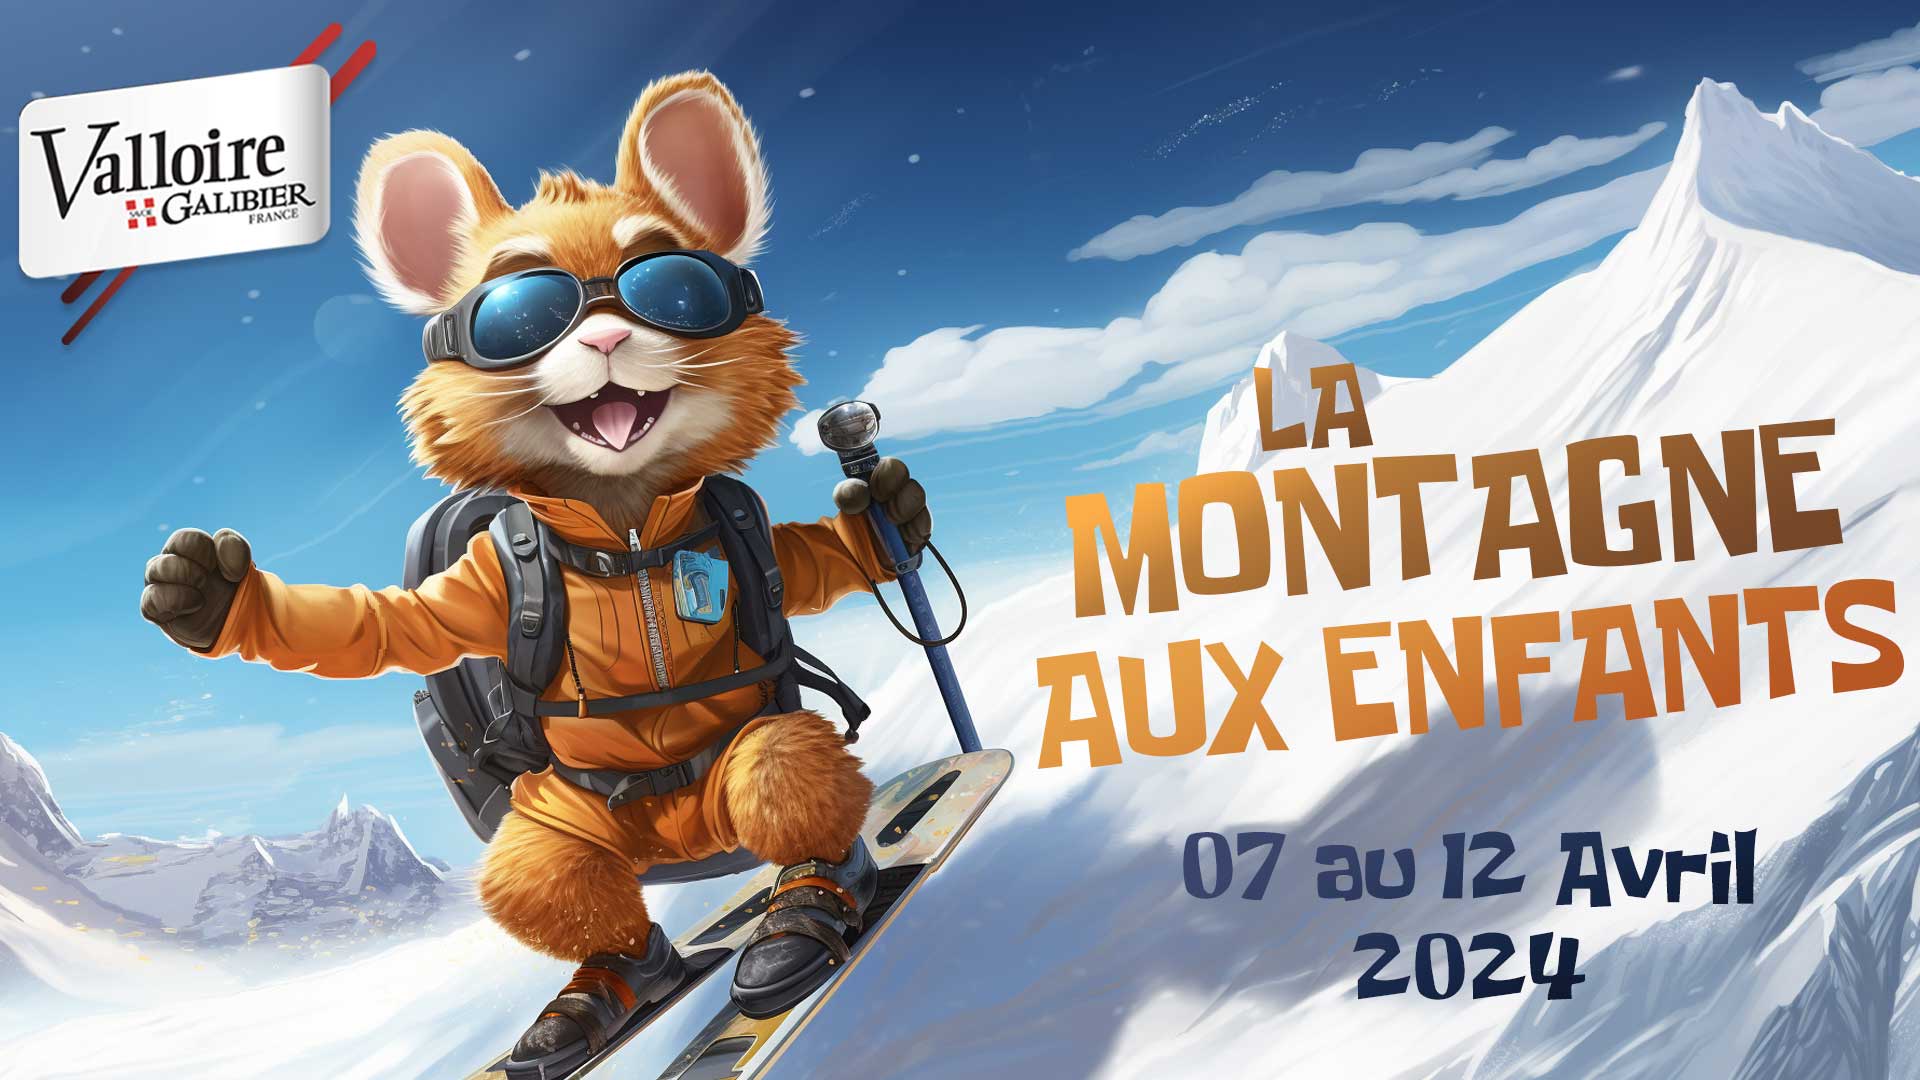 Ski gratuit pour les enfants en Avril à Valloire